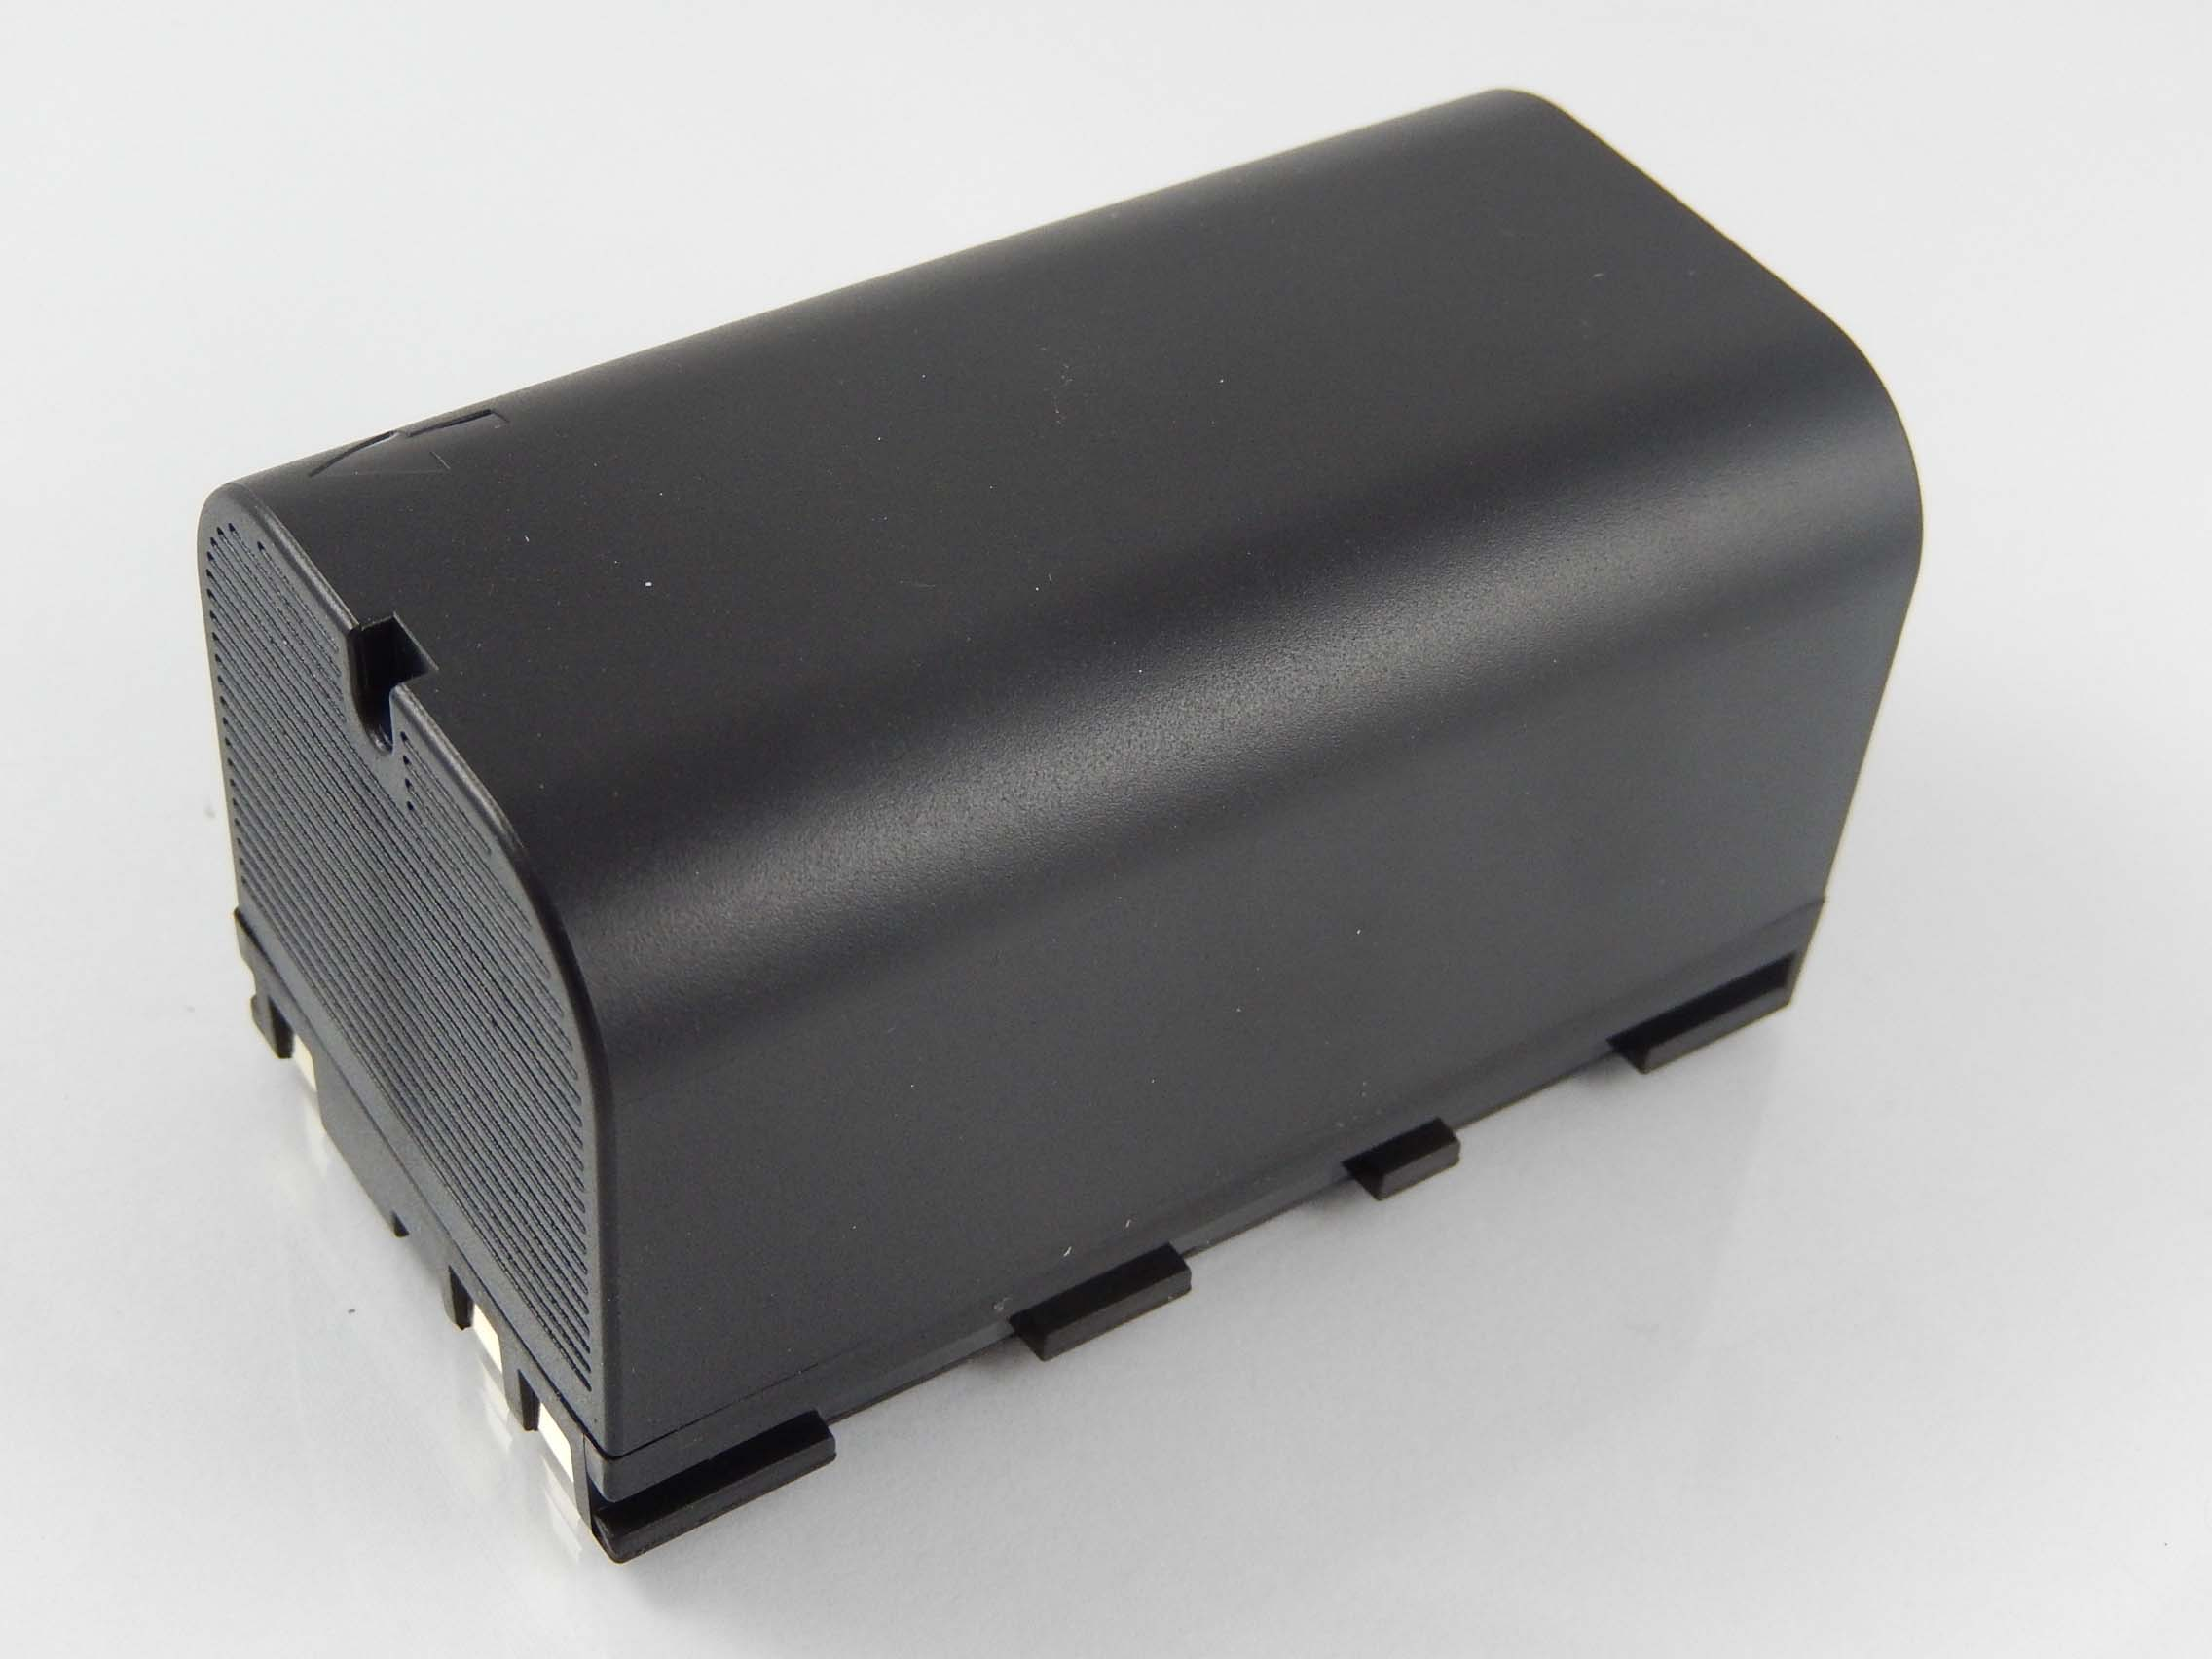 VHBW kompatibel mit Li-Ion - TS02 Akku Flexline 5600 Messgerät, TS09, Volt, 7.4 TS06, Leica